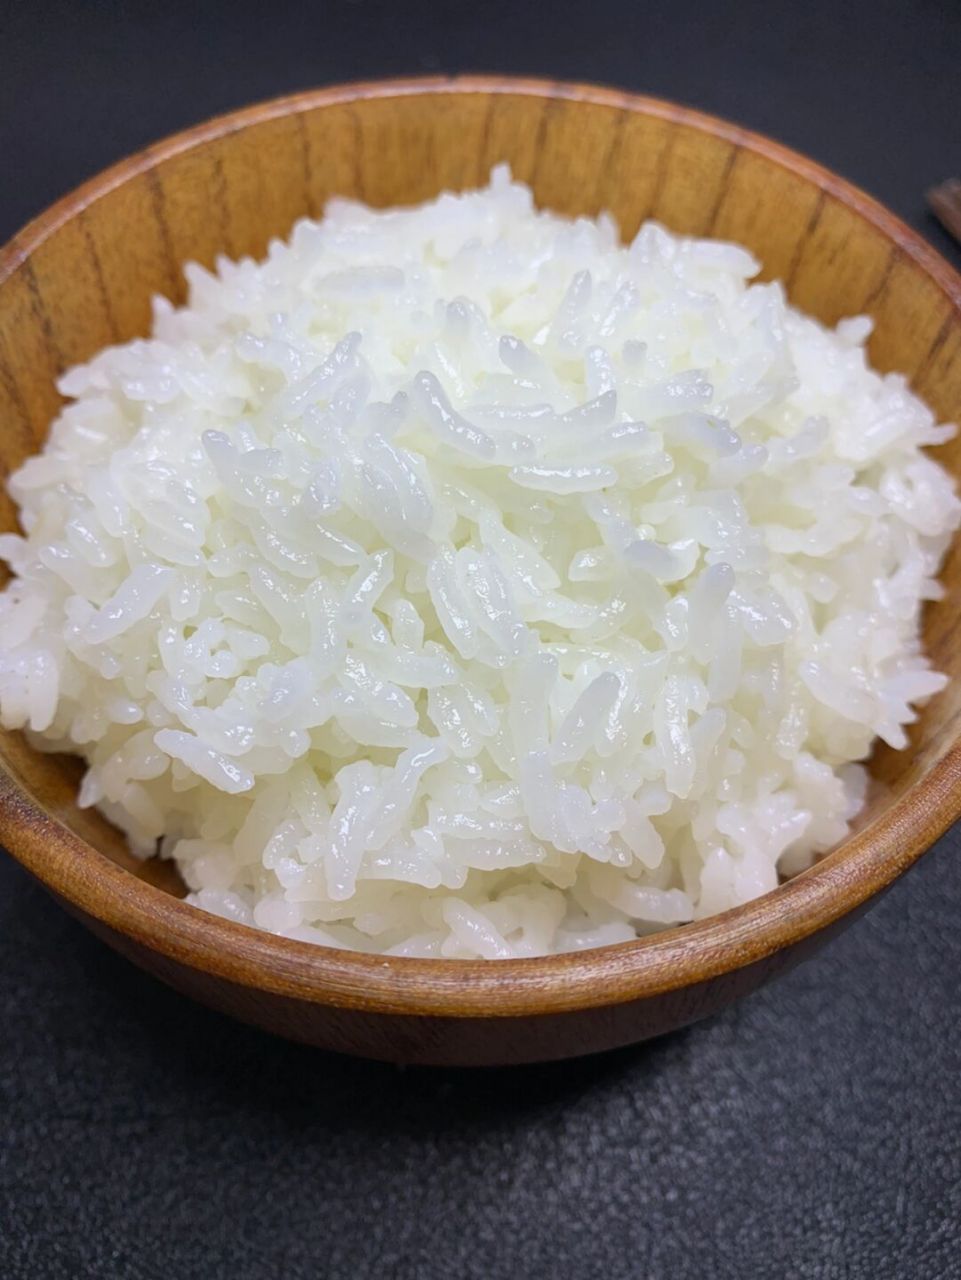 白米饭图片 真实图片